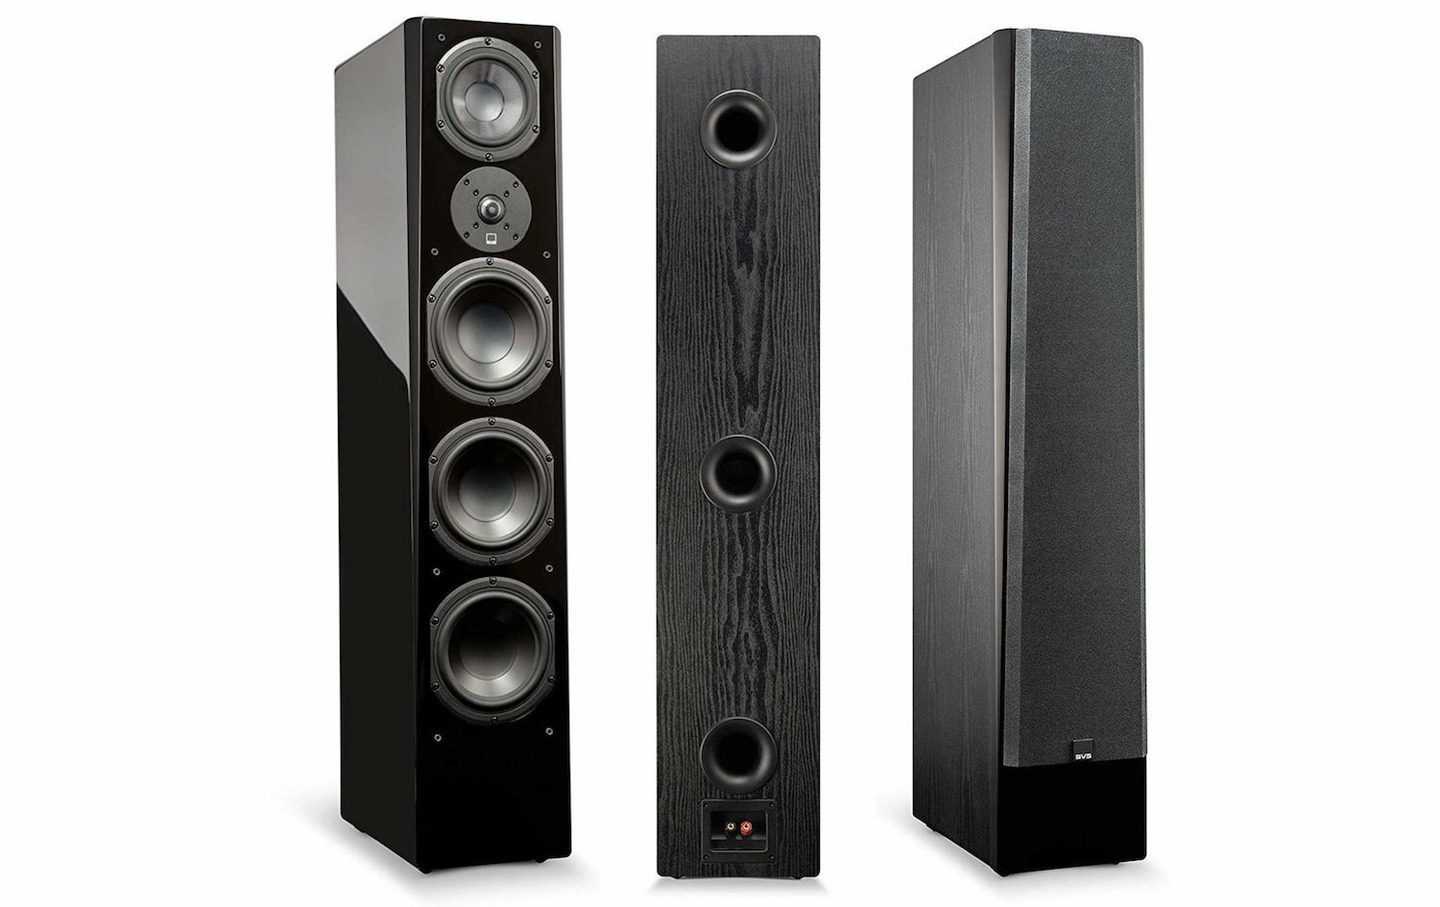 Svs prime pinnacle speaker | floorstanding speakers for home theater & stereo